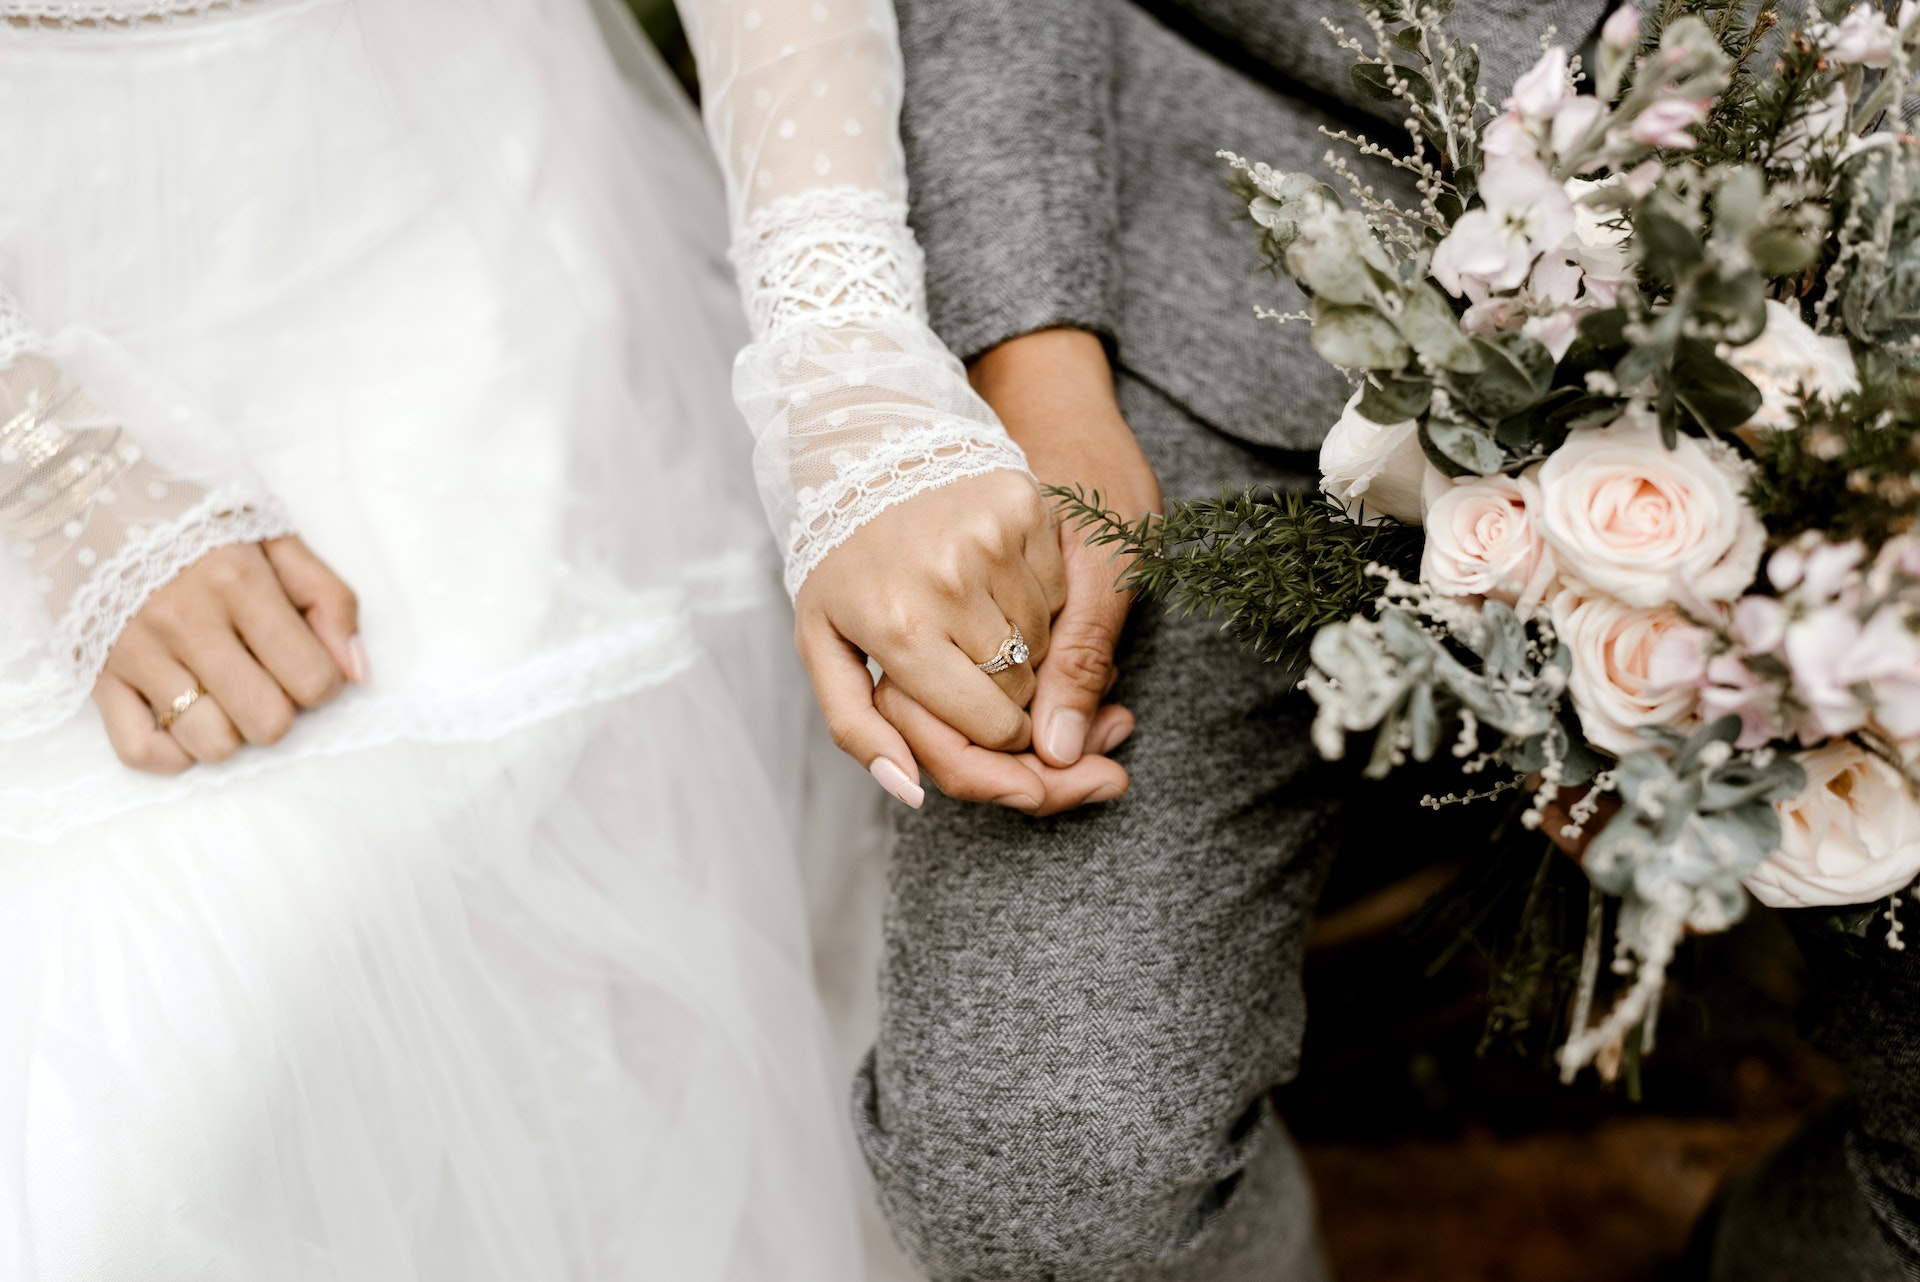 La mariée et le marié se tiennent par la main | Source: Shutterstock